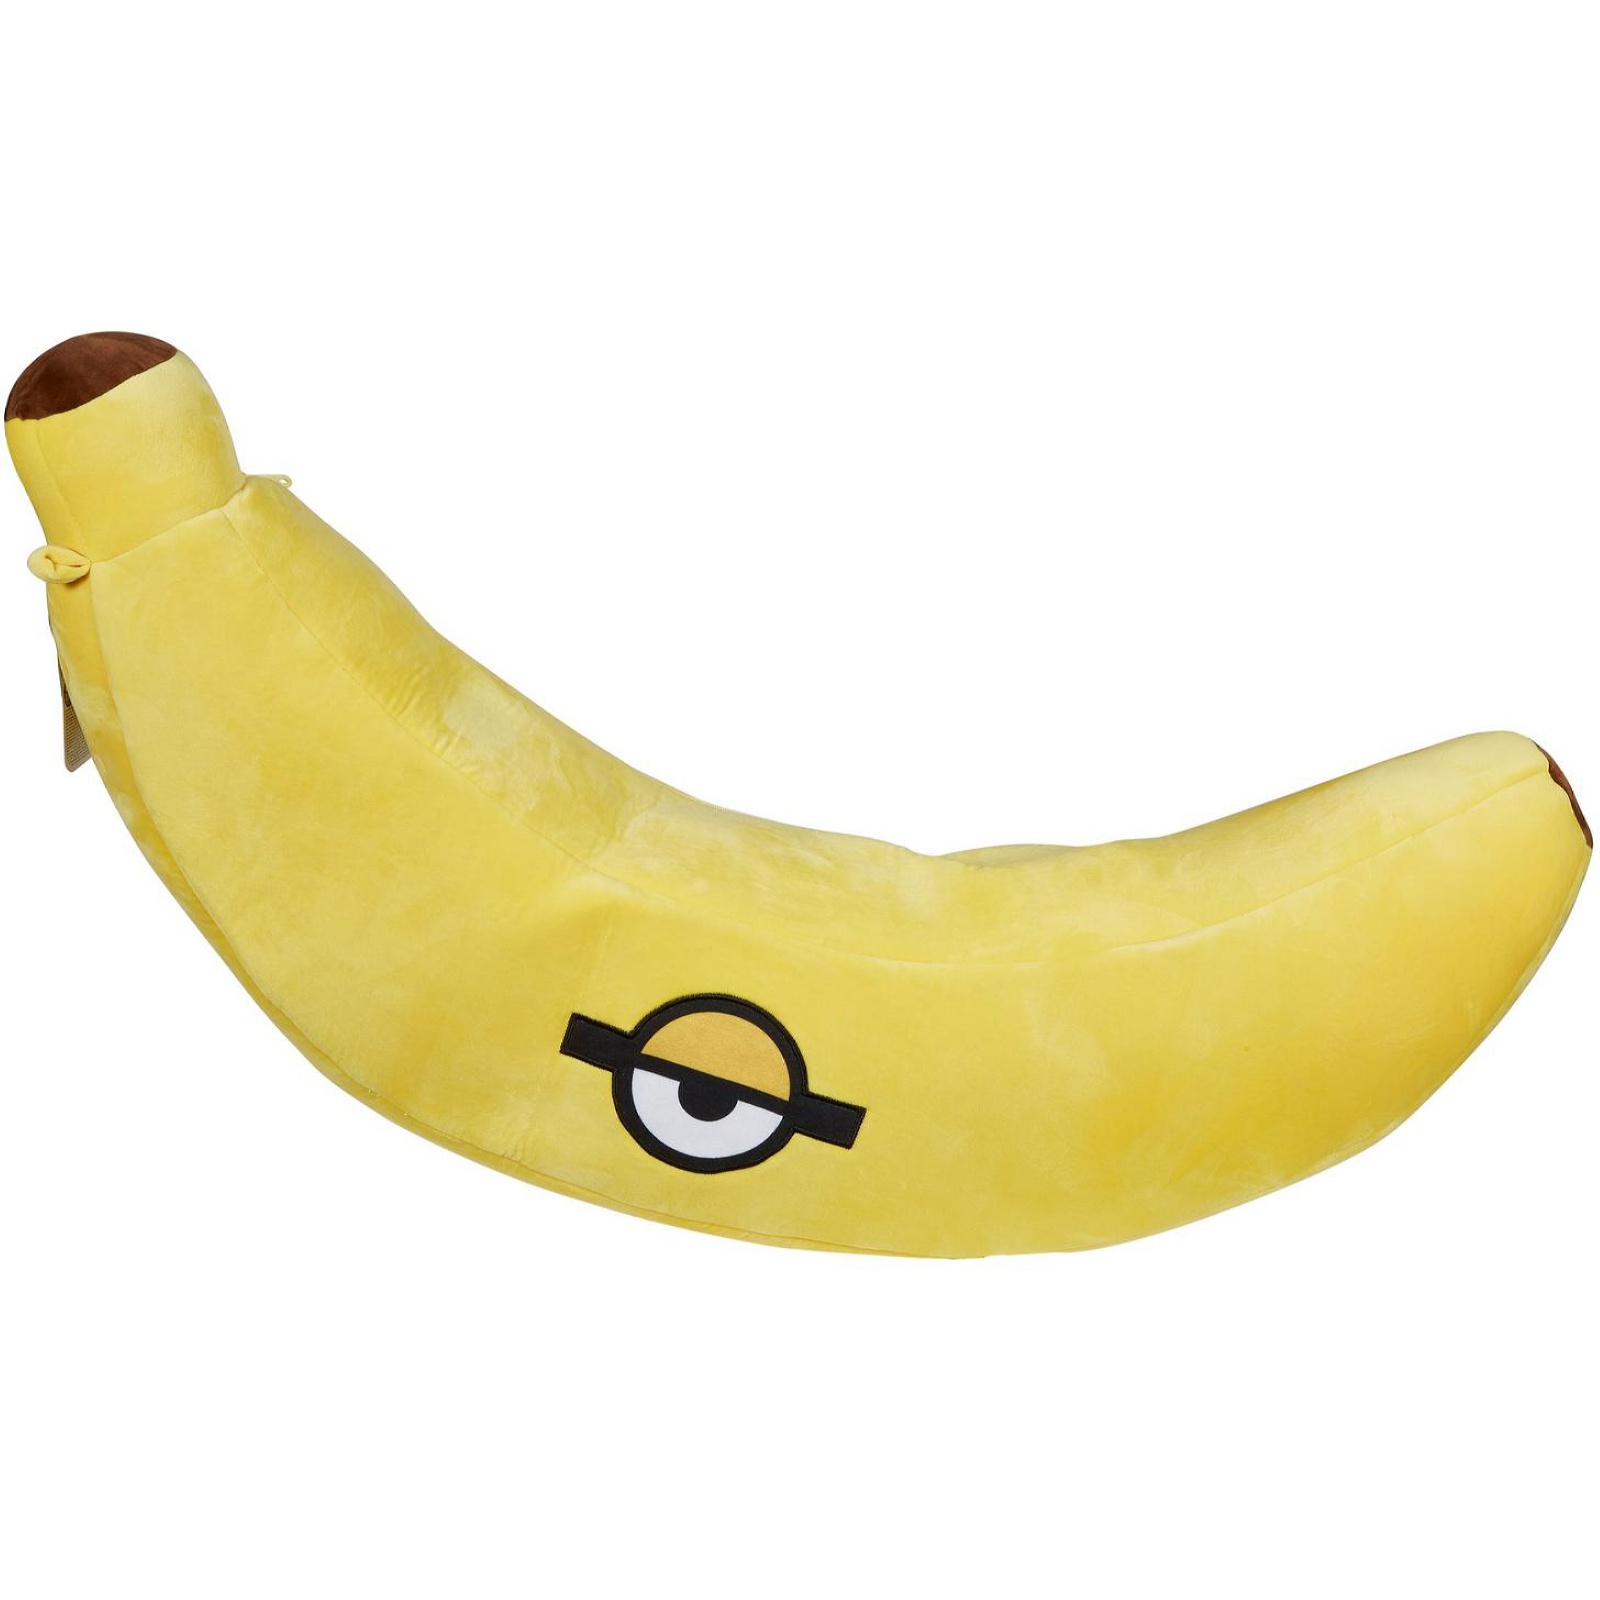 Игрушка мягкая Minions Гигантский банан GMJ66 - фото 3